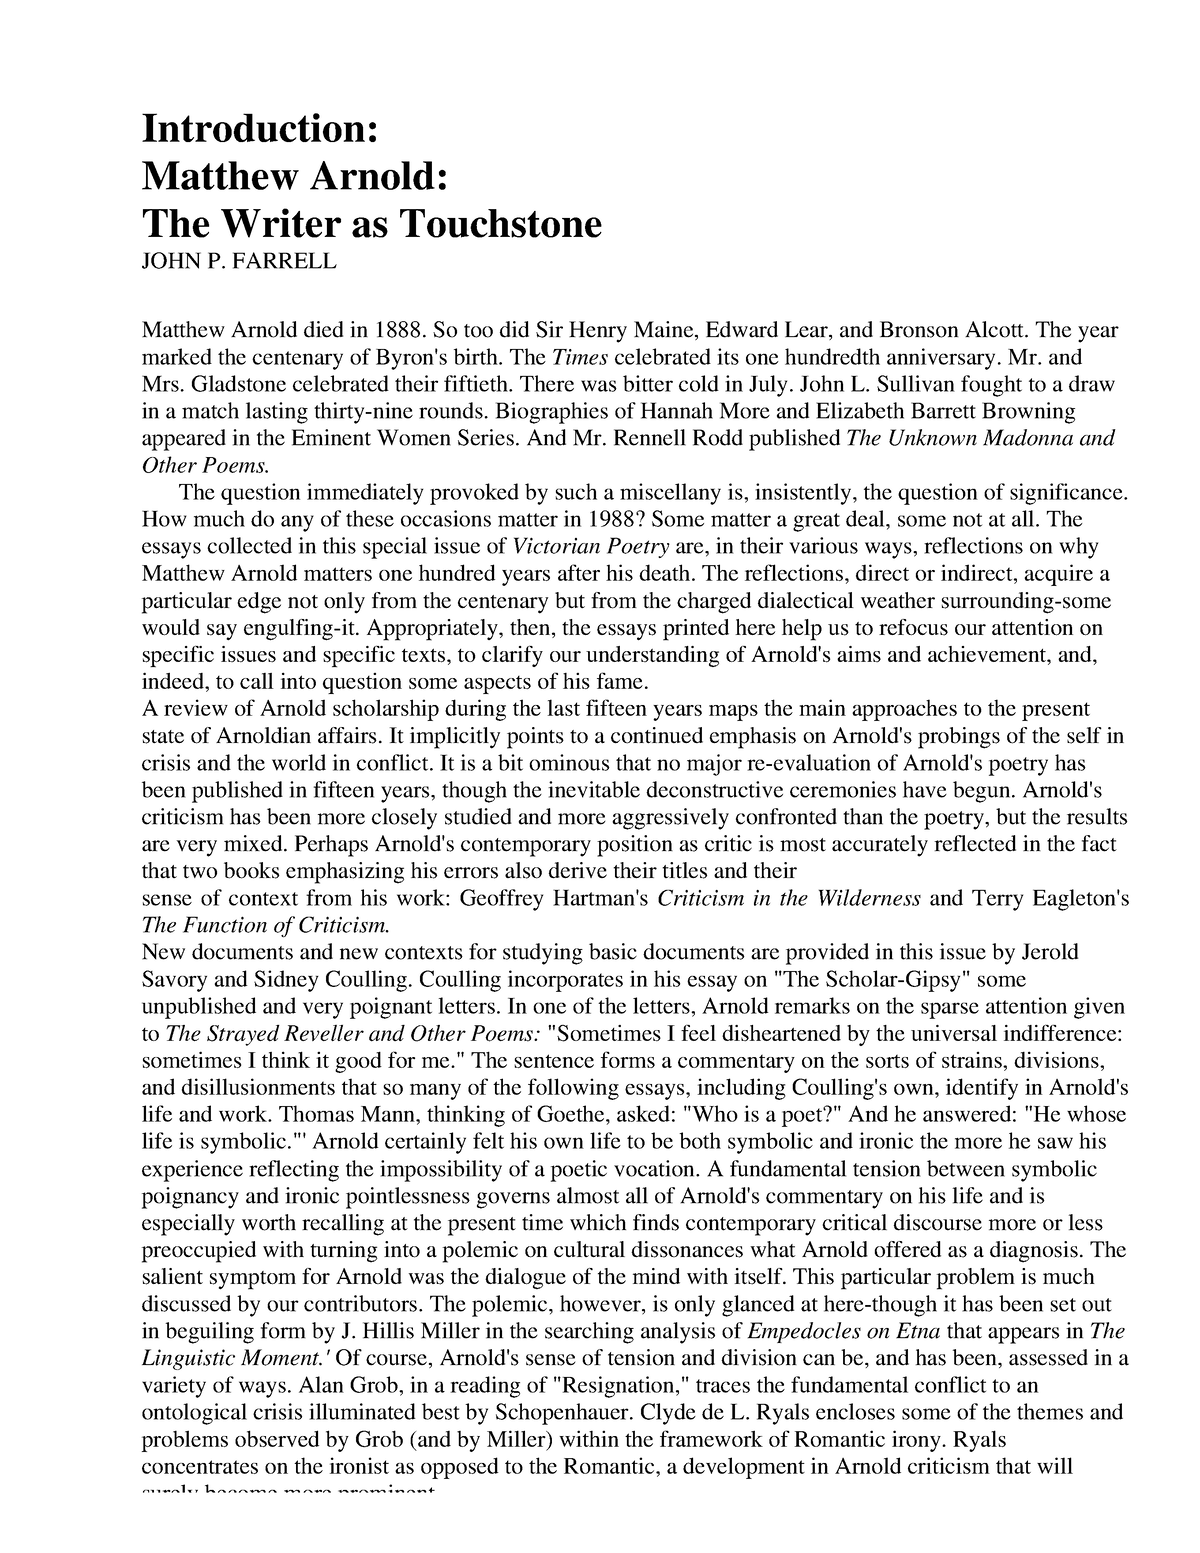 write an essay on arnold's touchstone method